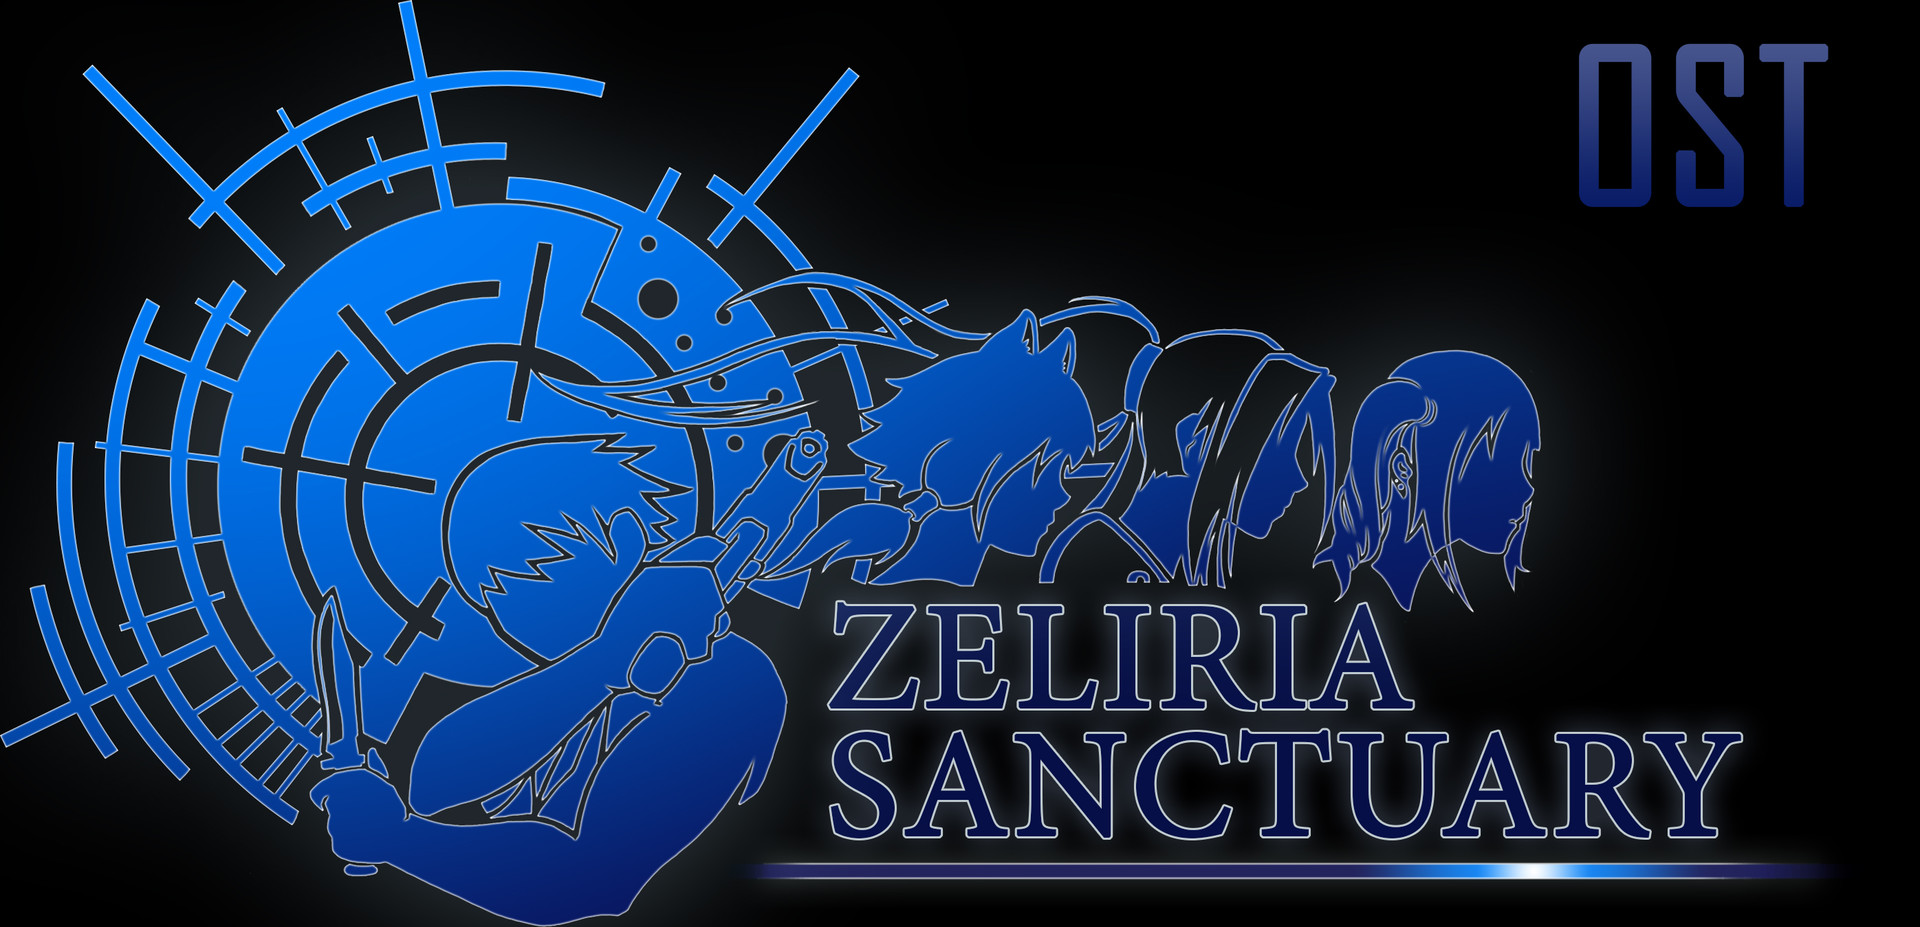 Zeliria Sanctuary - OST + ARTBOOK Featured Screenshot #1